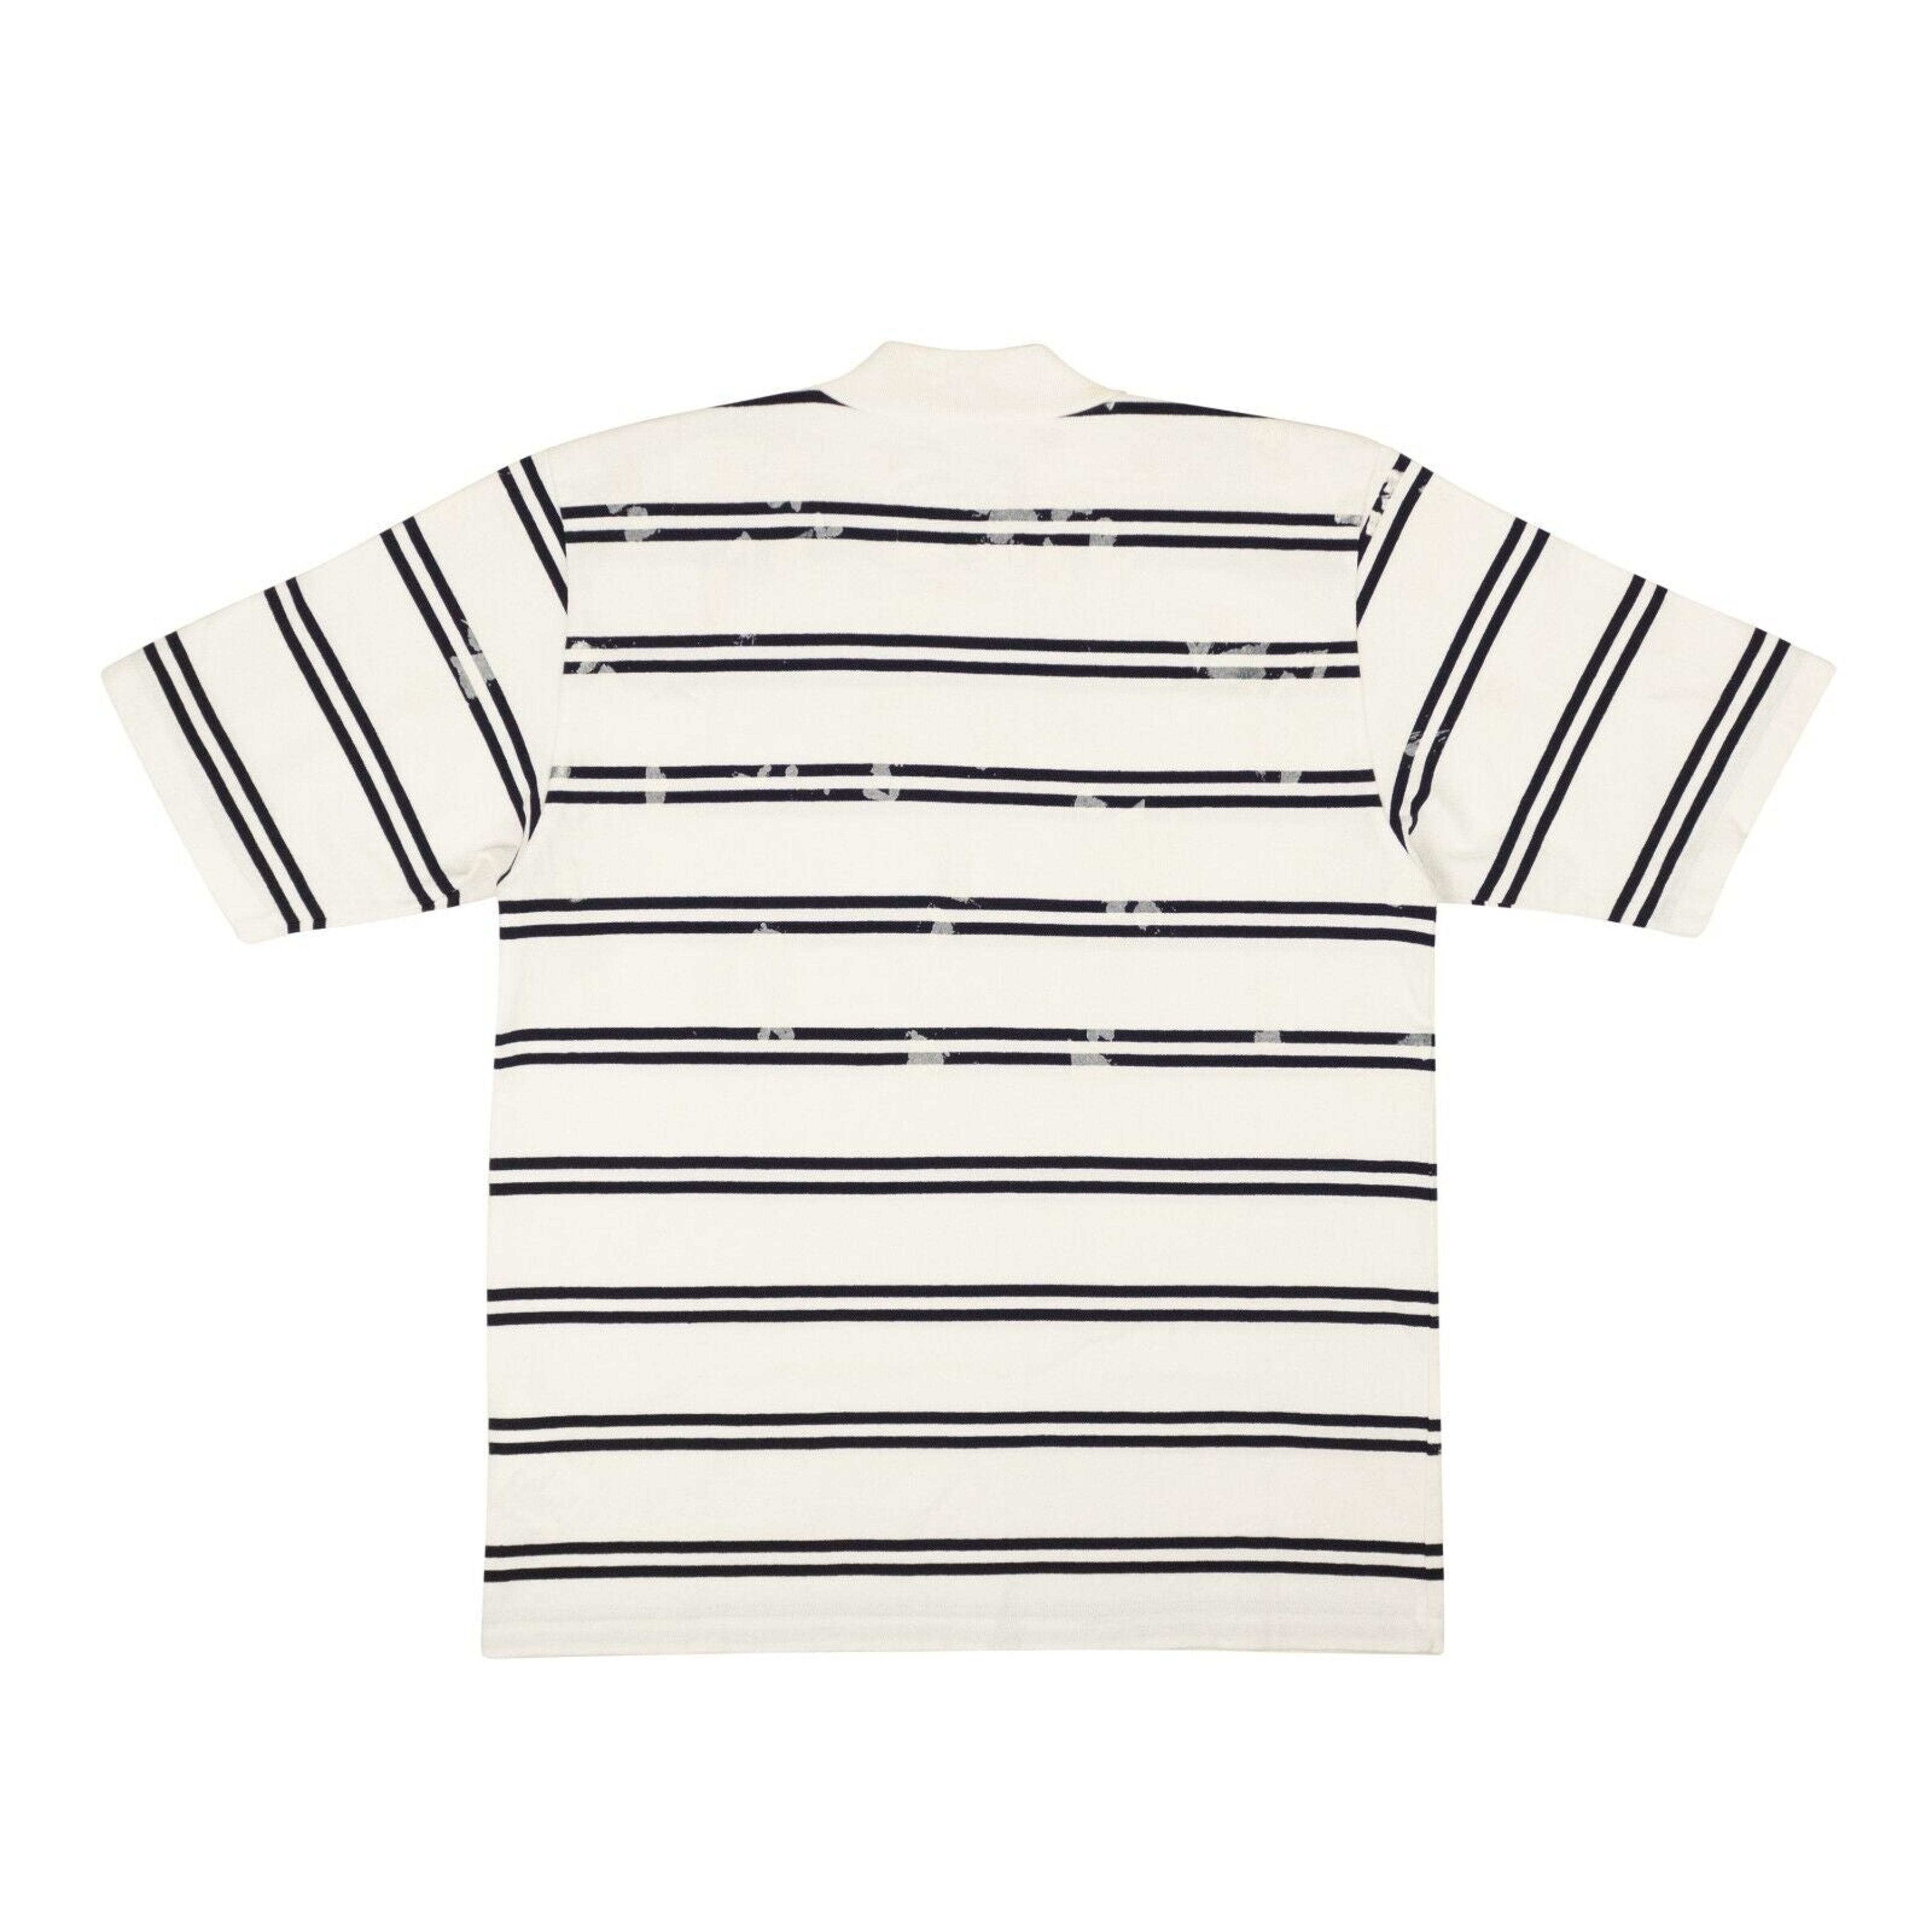 Alternate View 2 of Sacai Dixie Stripe T-Shirt - White/Navy